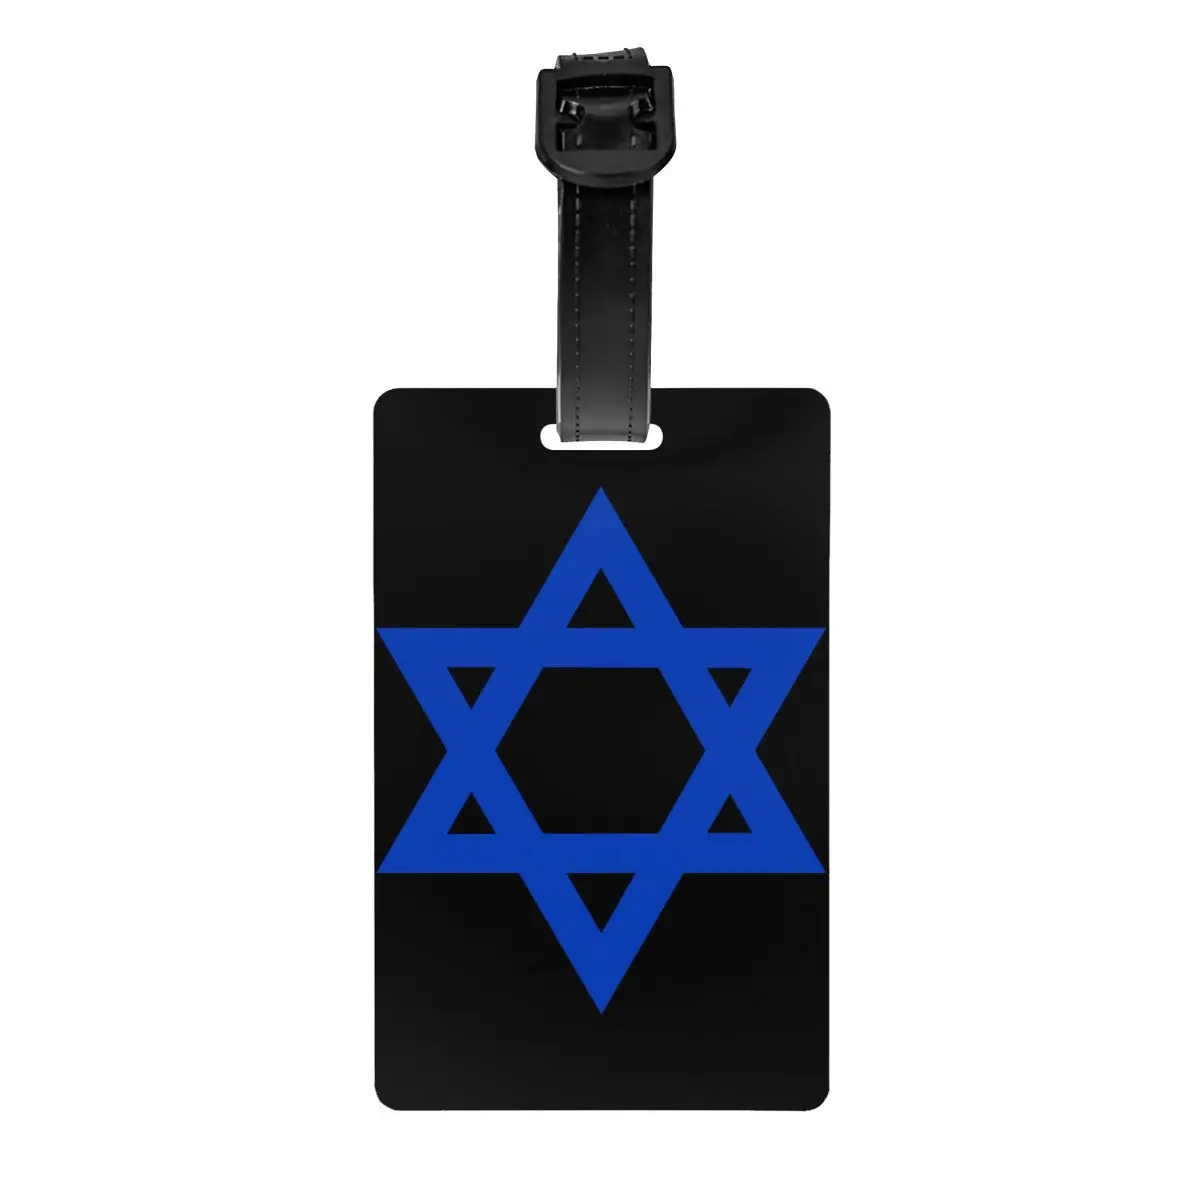 

Ярлык для багажа со звездой Давида, флагом Израиля, для чемоданов для путешествий, Обложка для личной безопасности с обложкой из Израиля